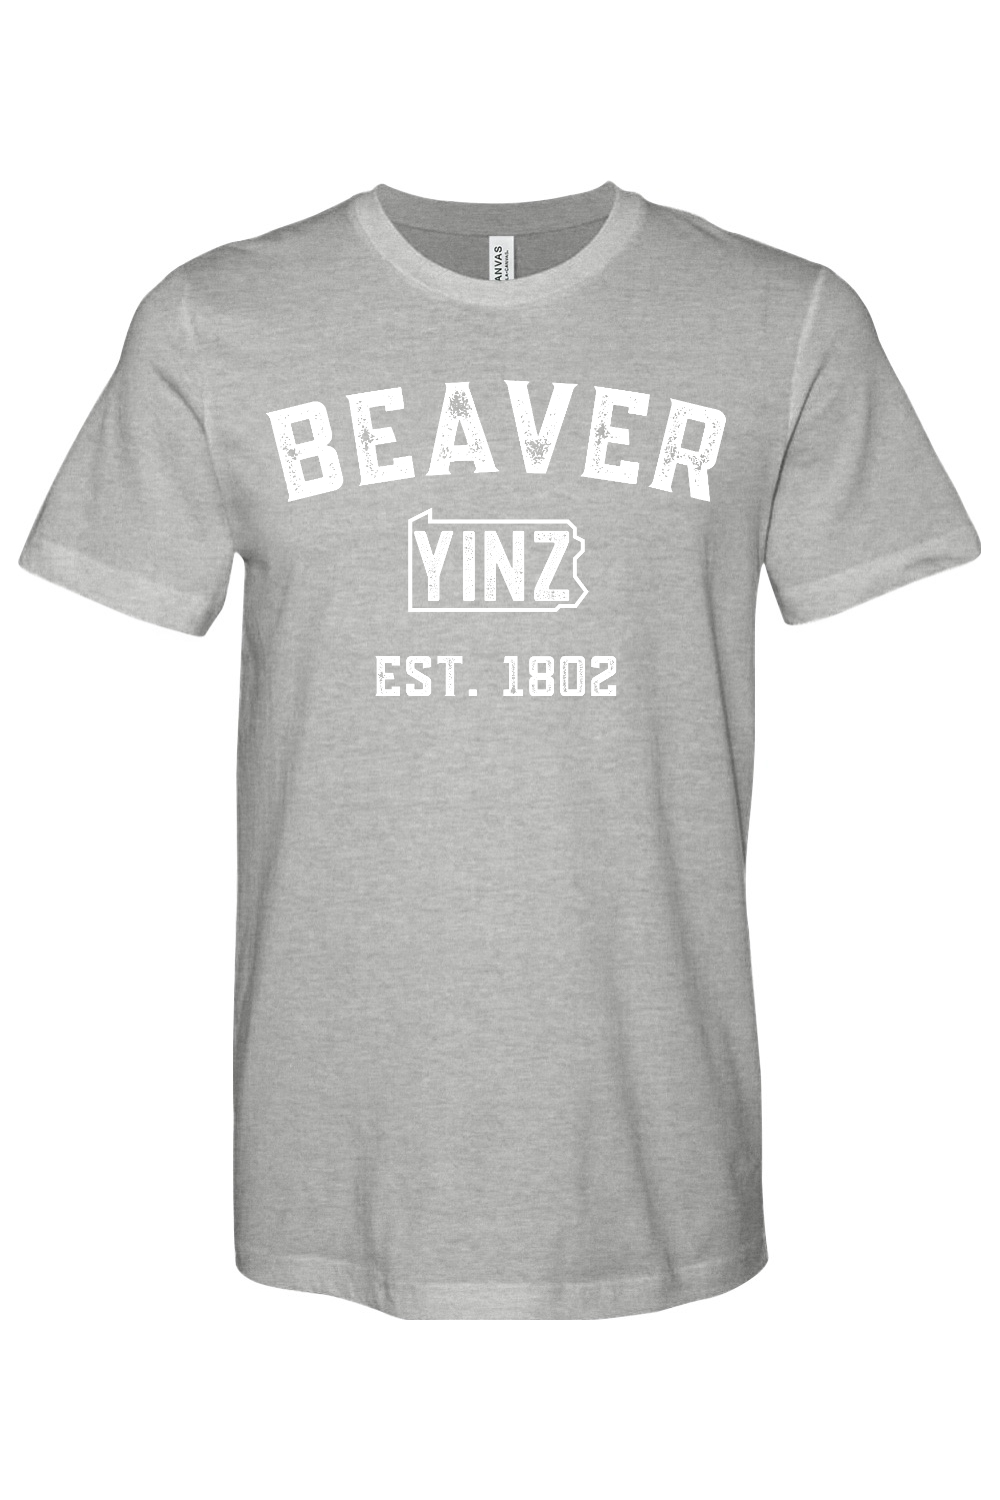 Beaver Yinzylvania - Yinzylvania